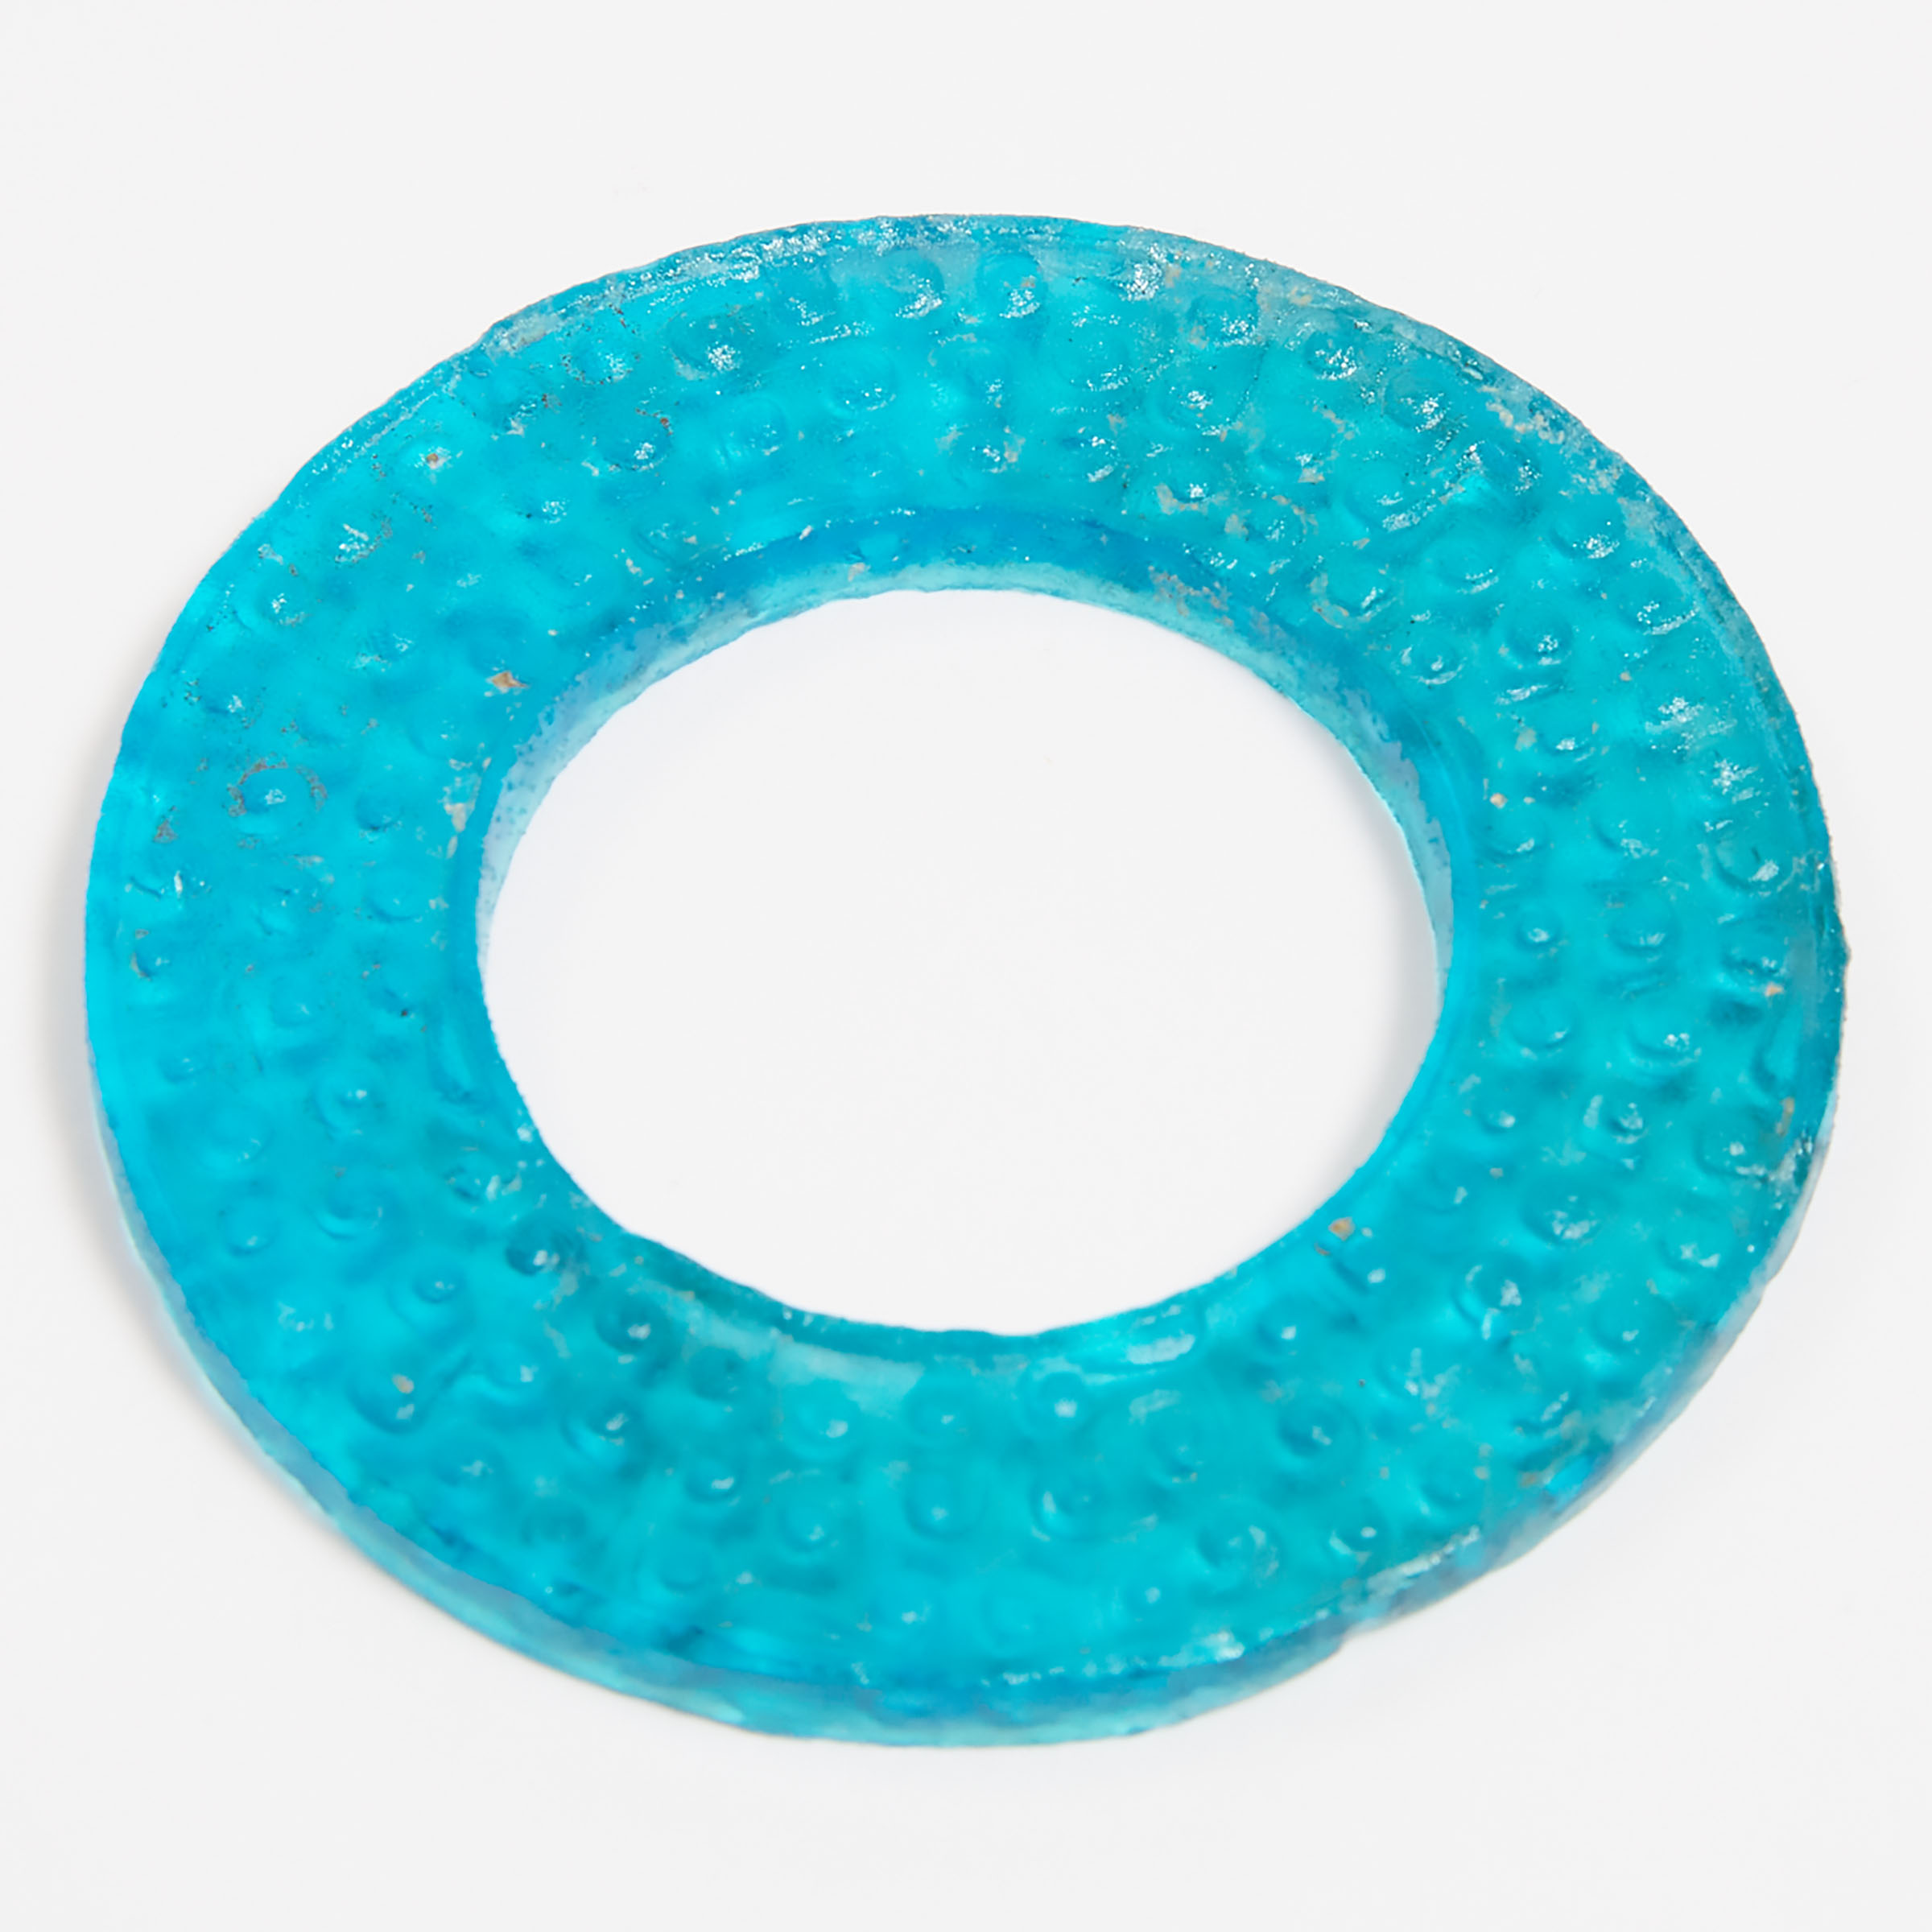 A Blue Glass Bi Disc